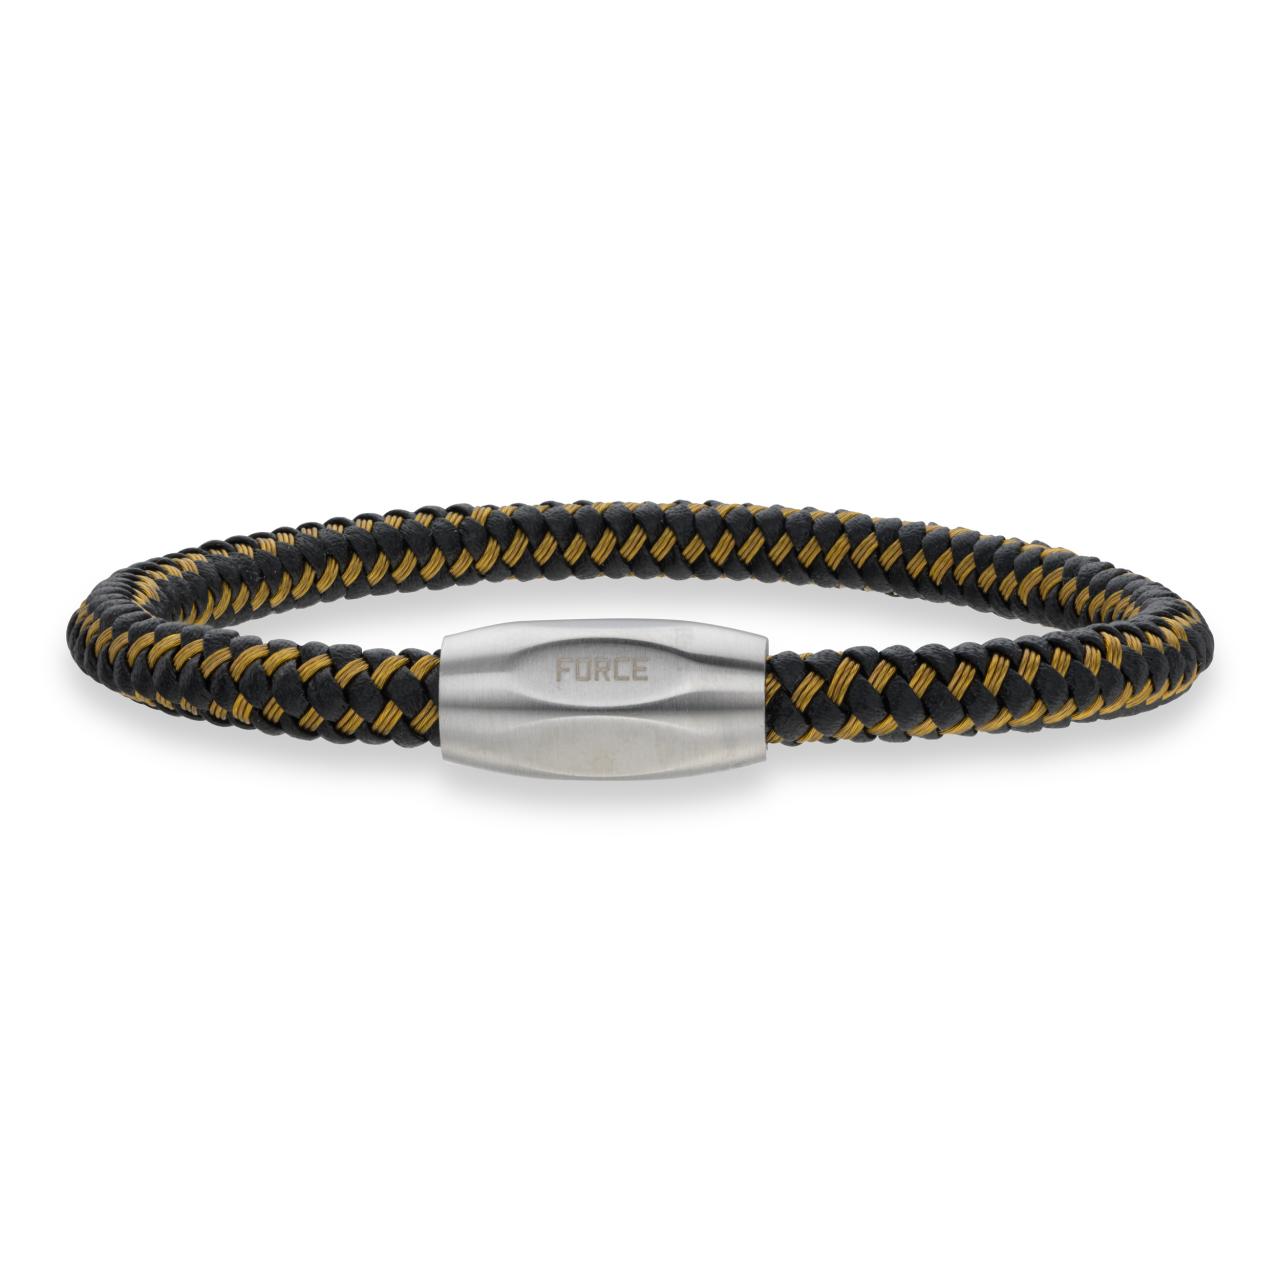 *Force armbånd guld kabel/sort læder stål lås 23cm